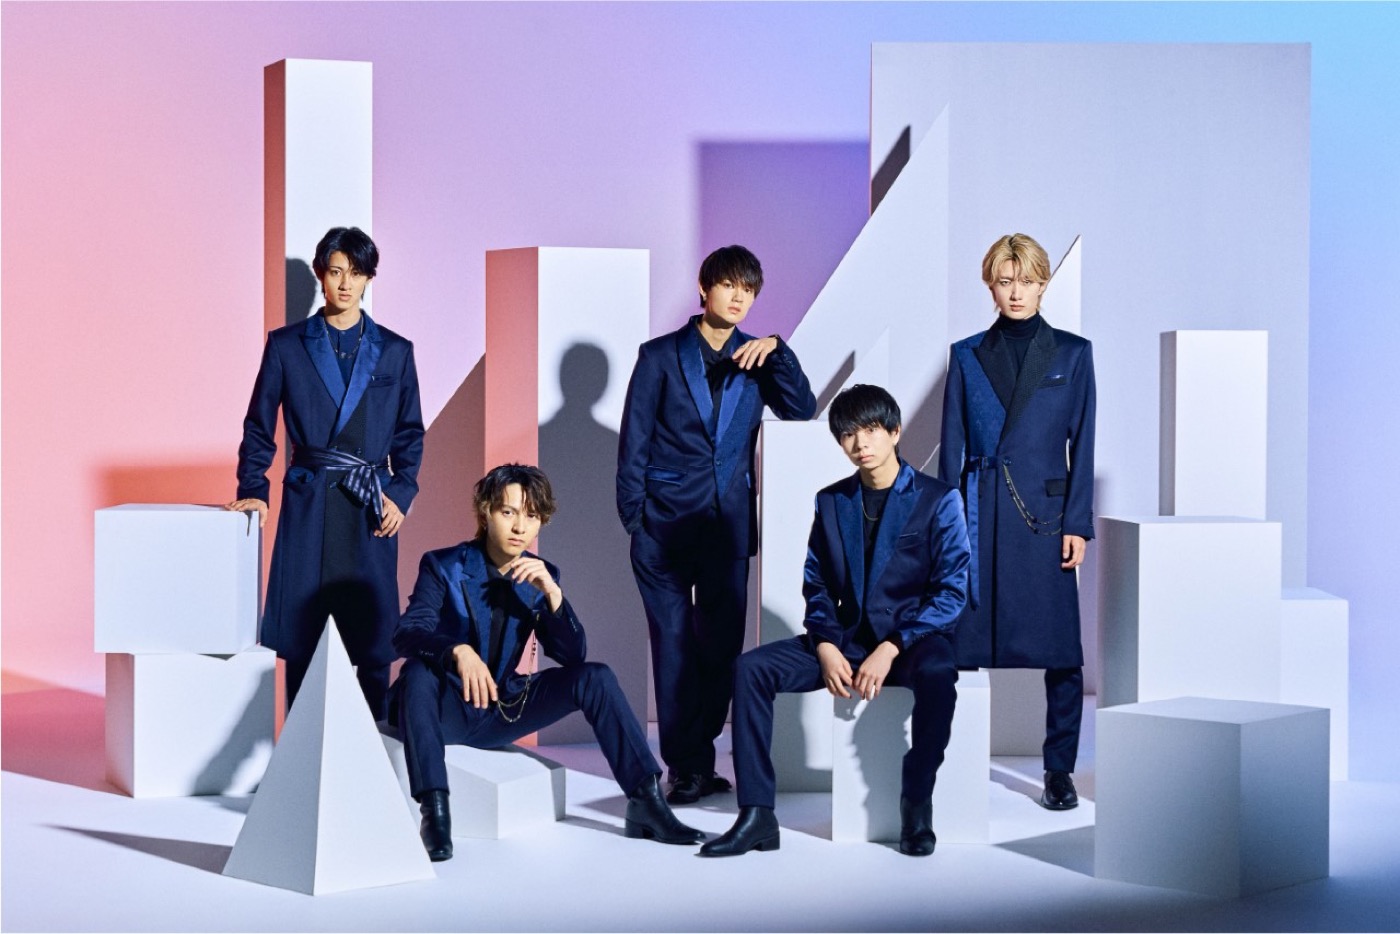 M!LK、ニューシングル「STARS」発売を記念したオンライン特典会の開催が決定